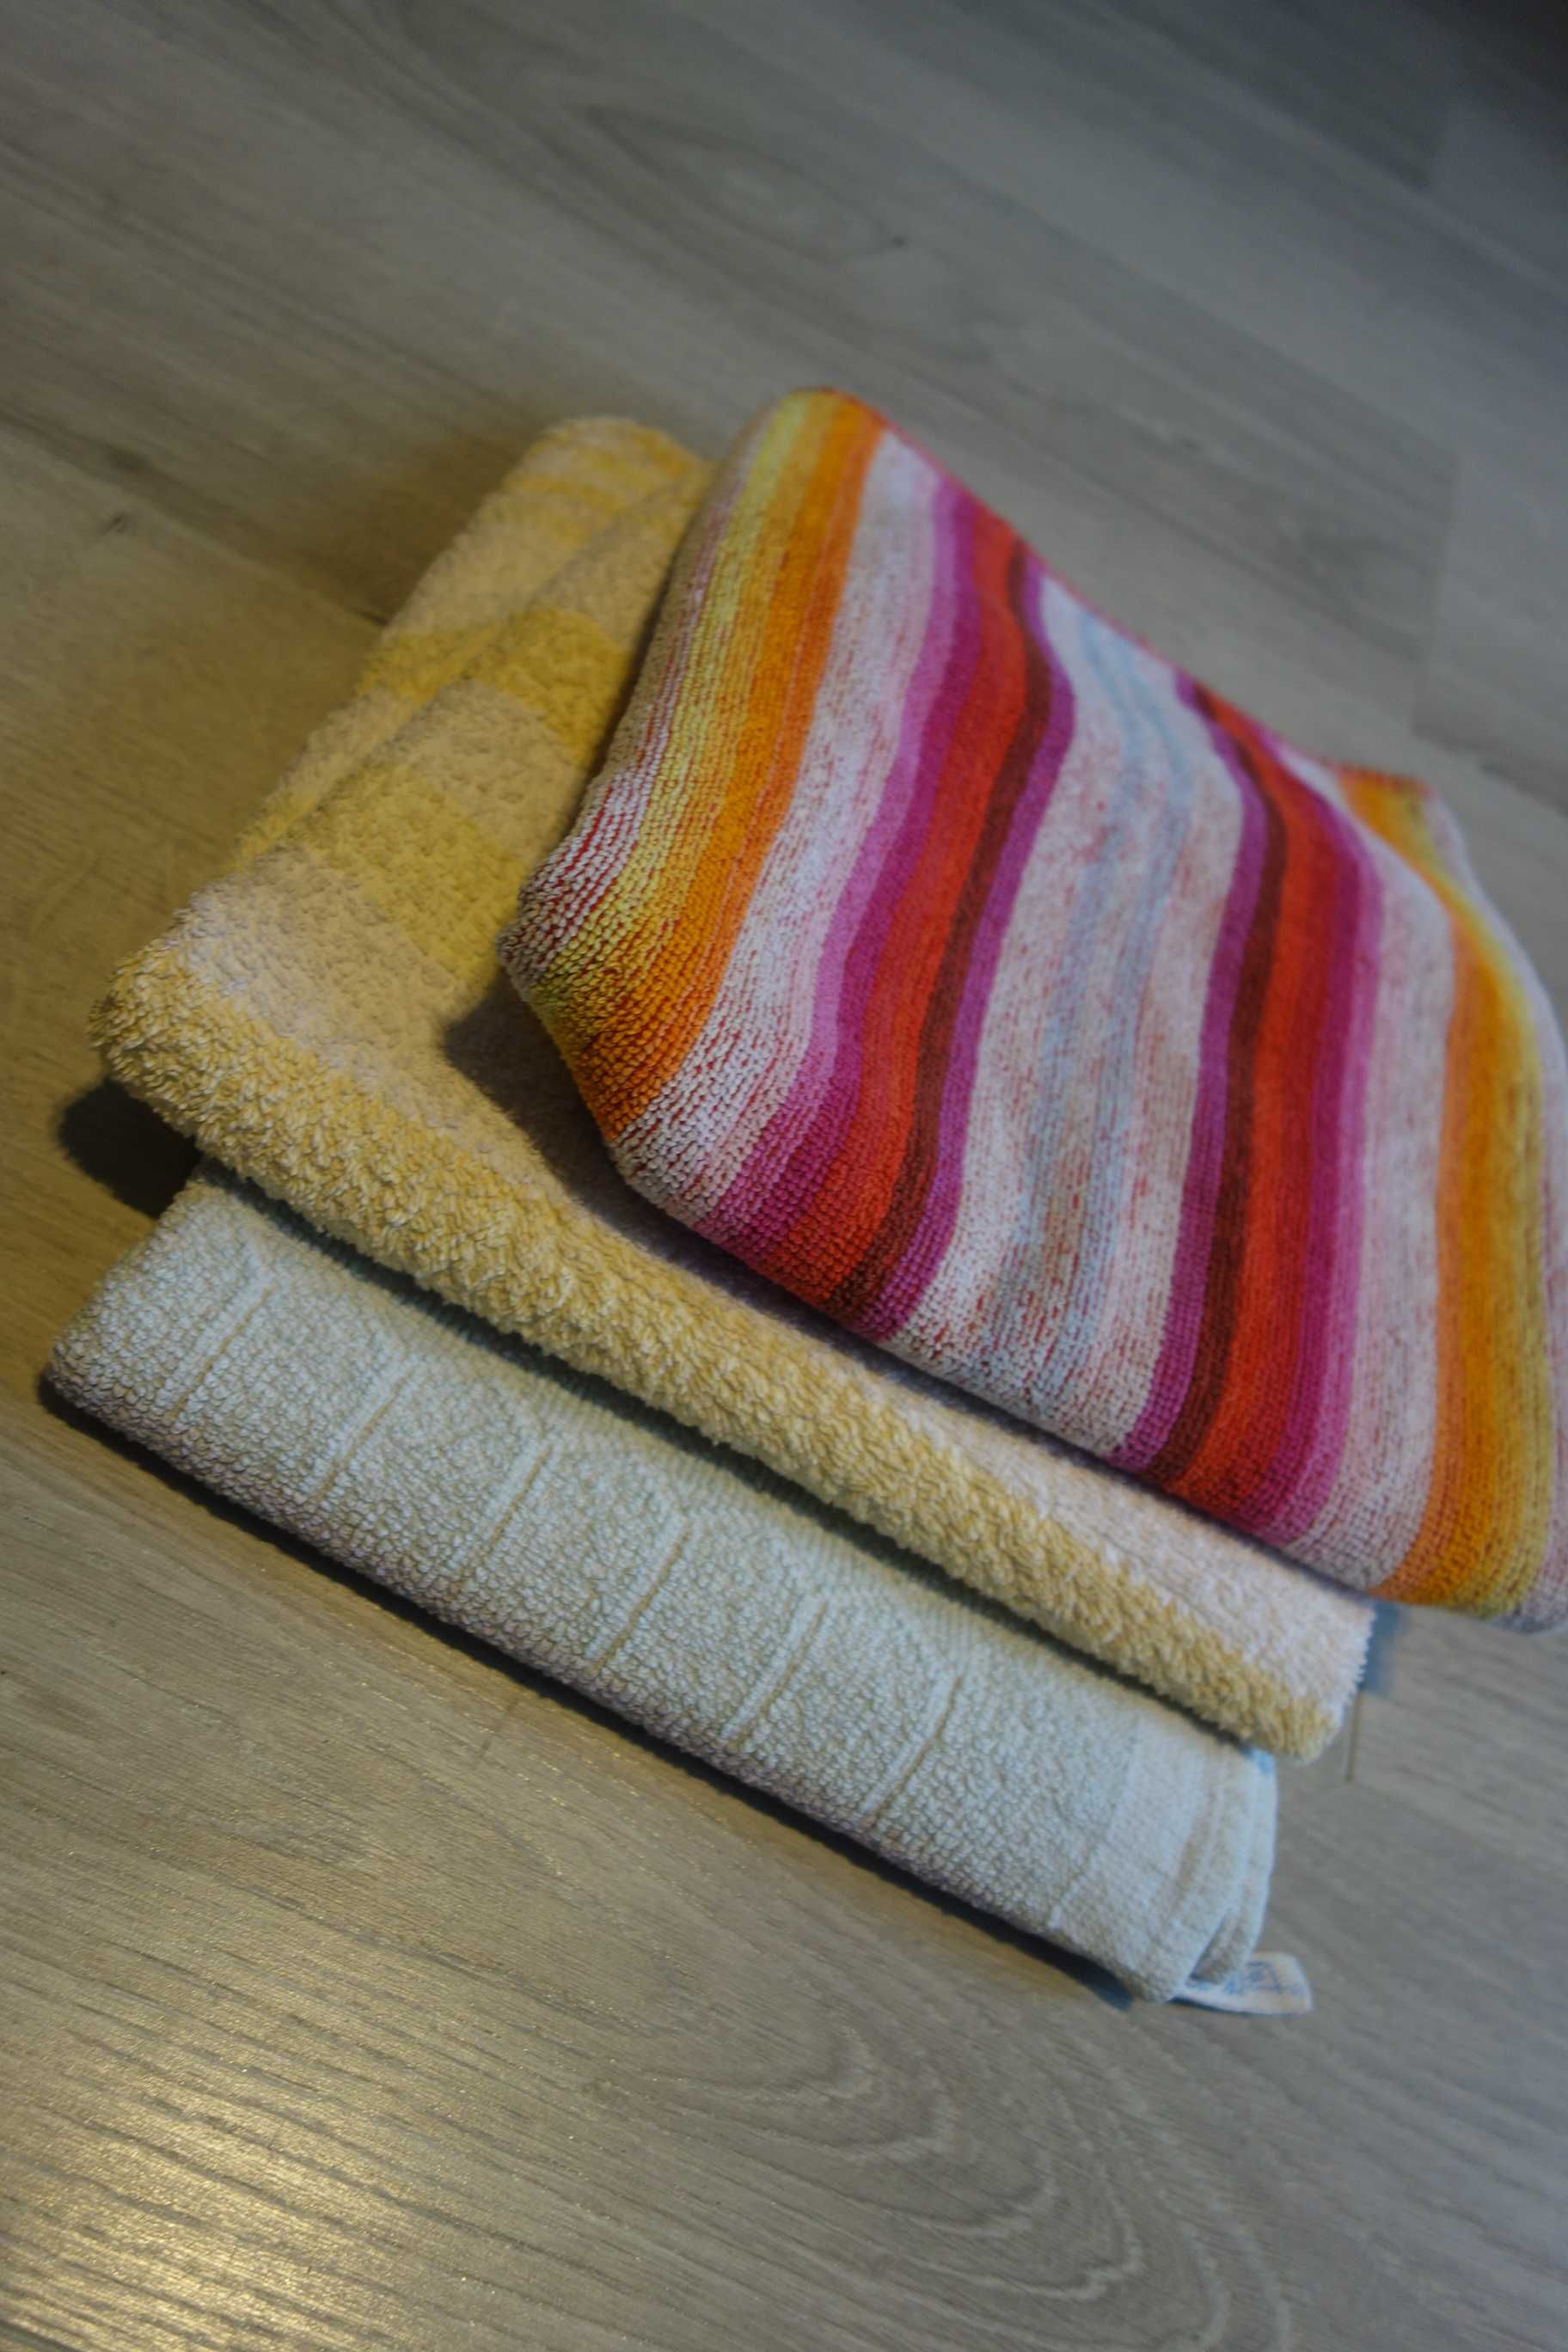 bawełna 100% frotte 3 sztuki razem używane ręczniki